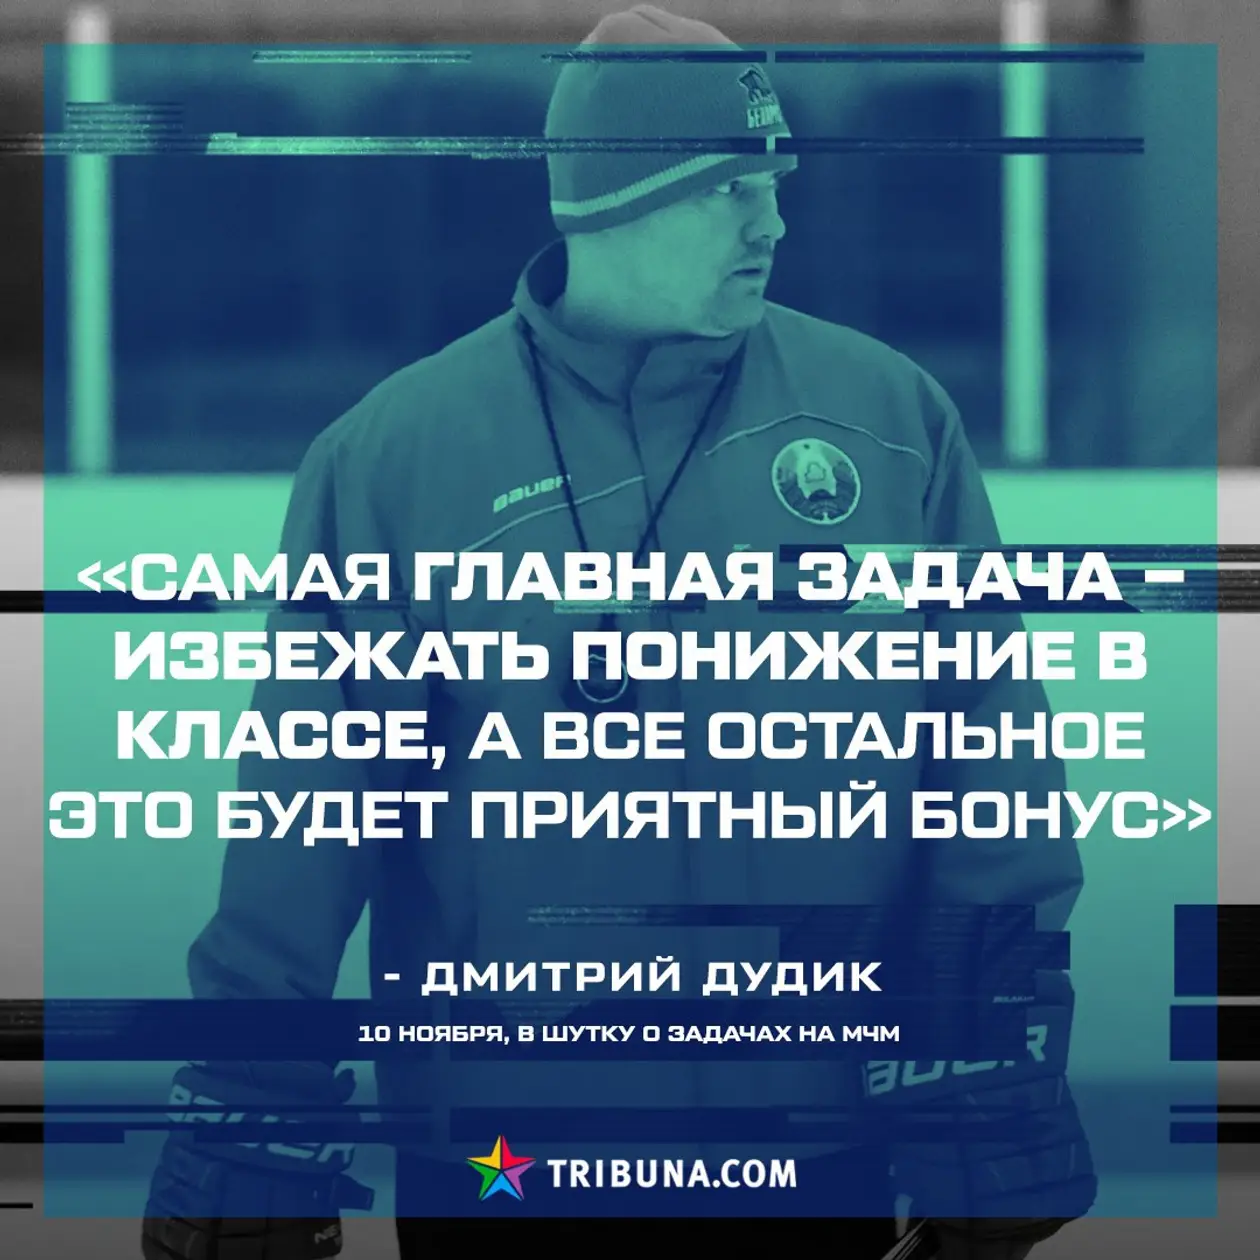 Главный тренер белорусов перед молодежным ЧМ сказал, что главное – не вылететь. Оказалось, это не шутка